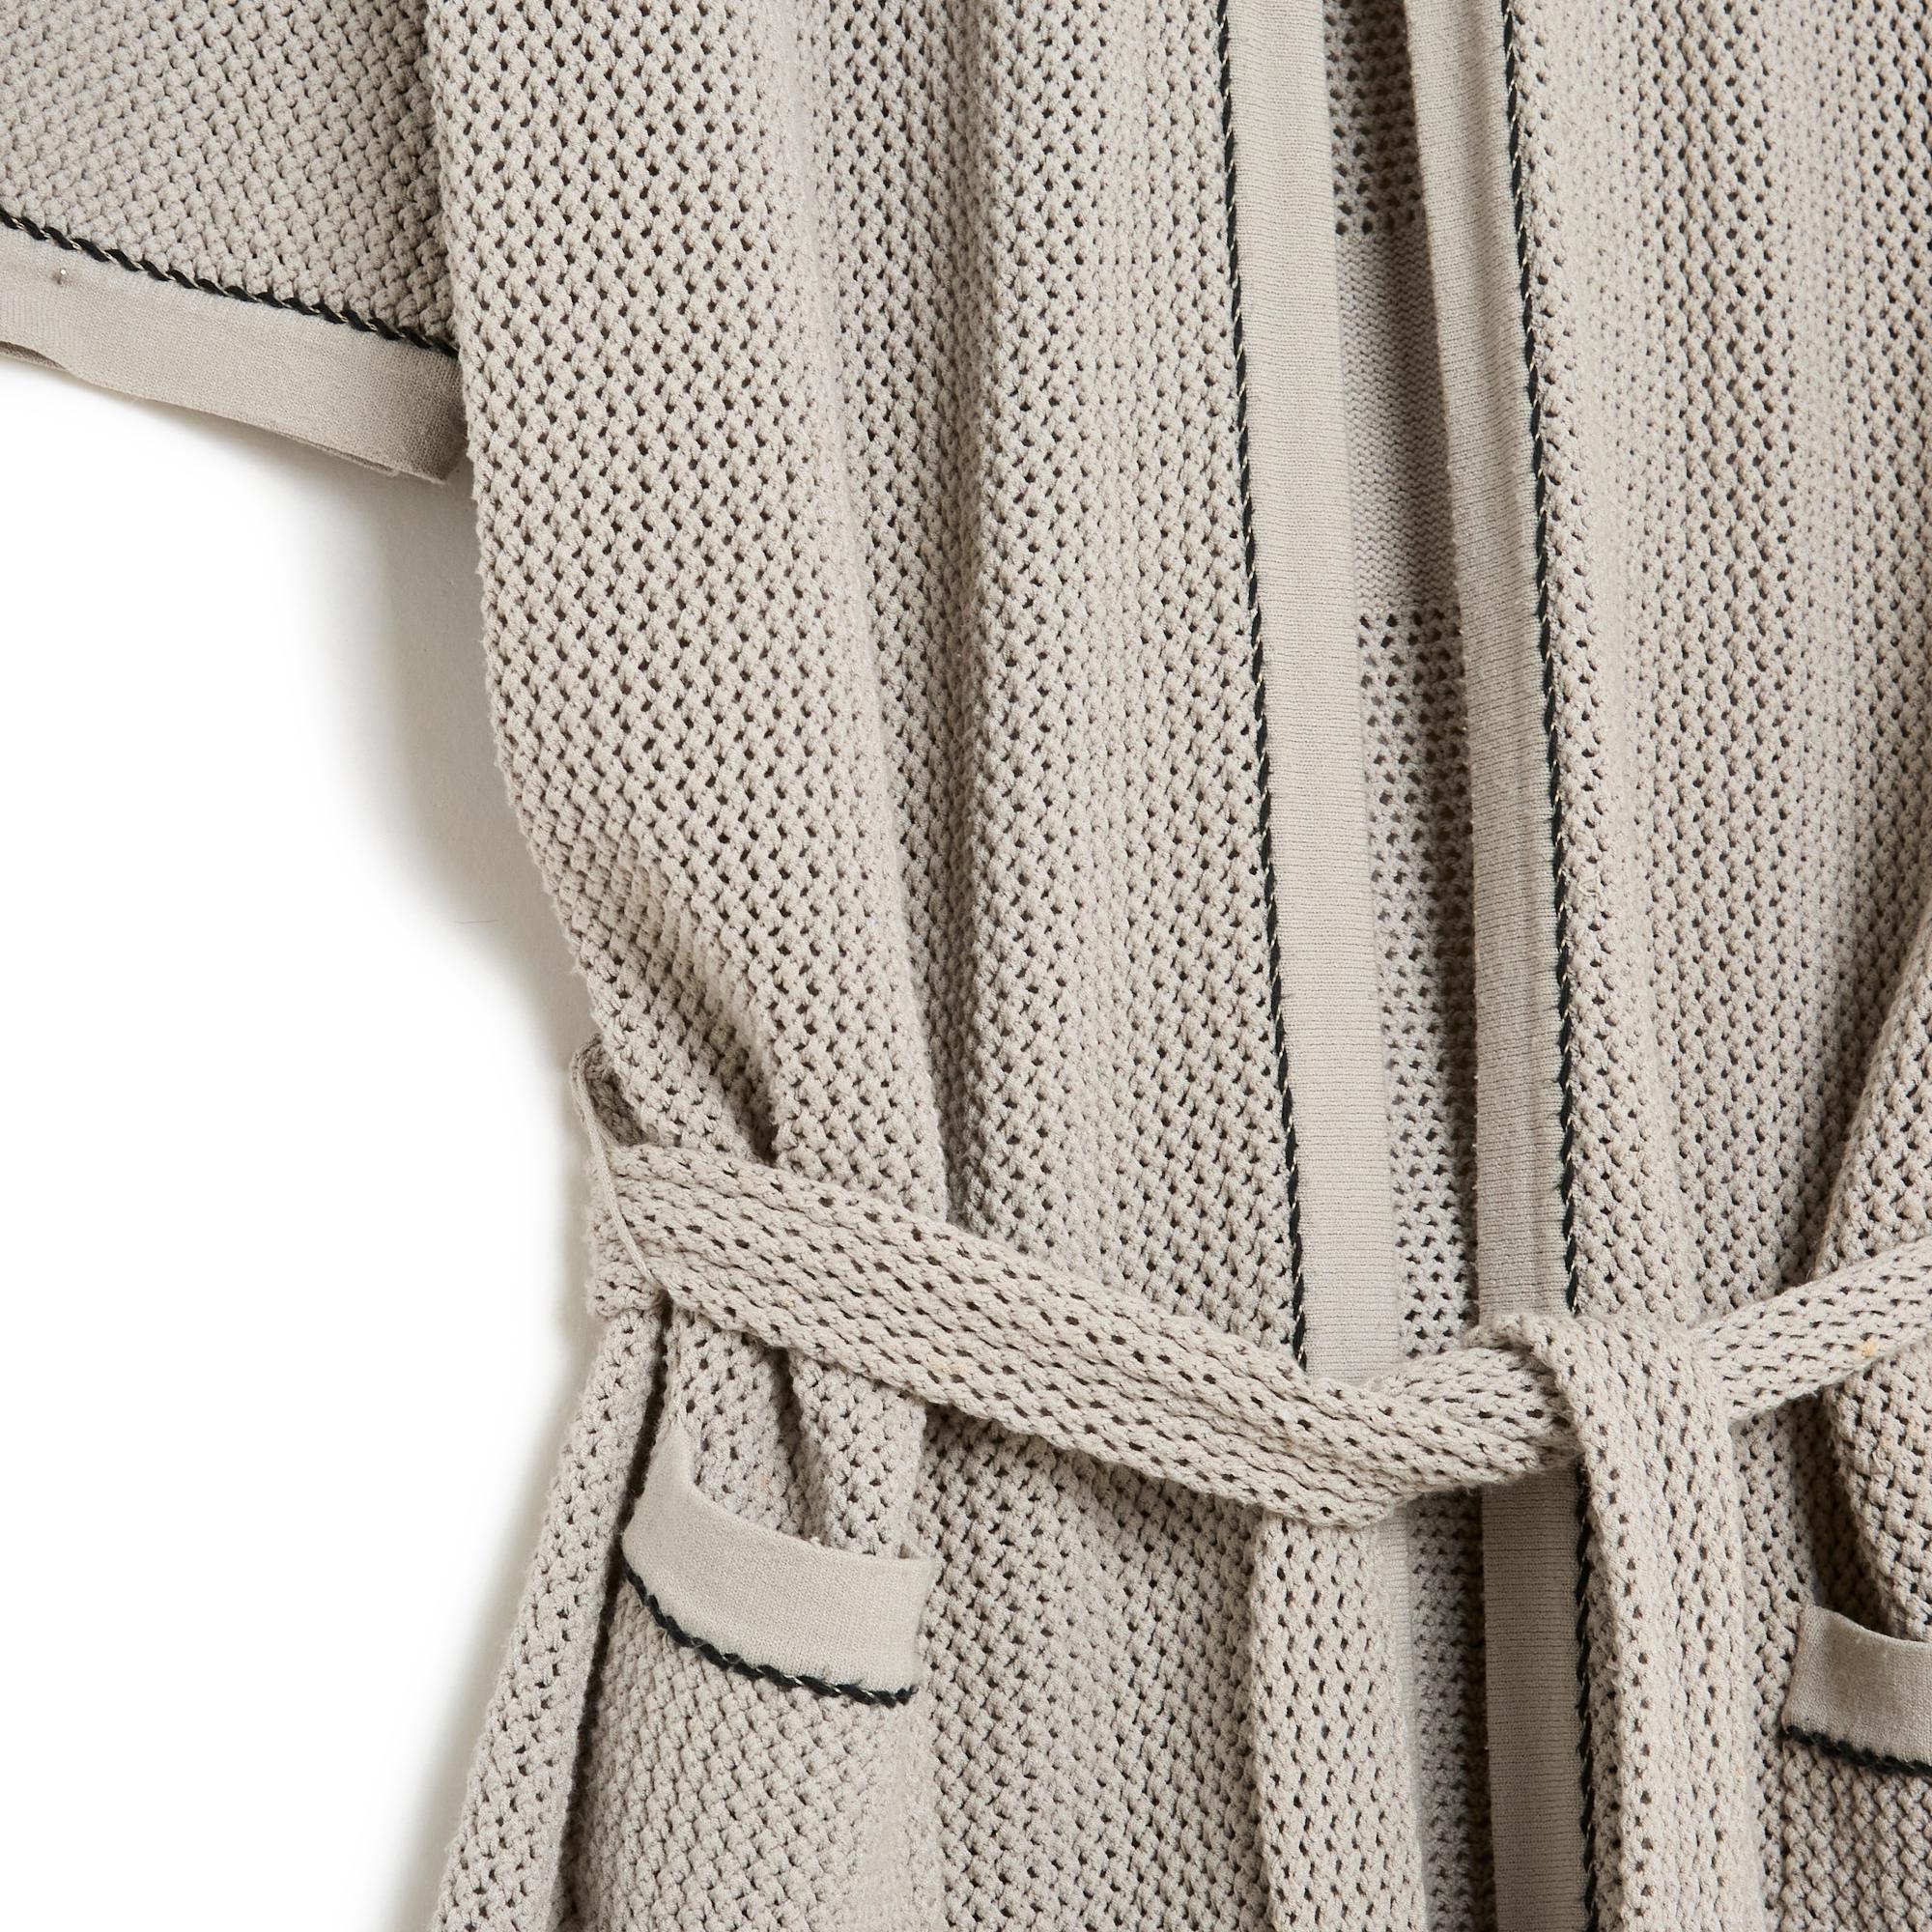 Chanel lange Jacke aus der Collection'S Cruise 2009 oder Strickjacke mit Gürtel aus taupe-beigem Viskosestoff, verziert mit schwarzer Paspel und einem großen CC-Motiv in Form eines Medaillons auf dem Rücken, Rundhalsausschnitt, 2/3 Ärmel,